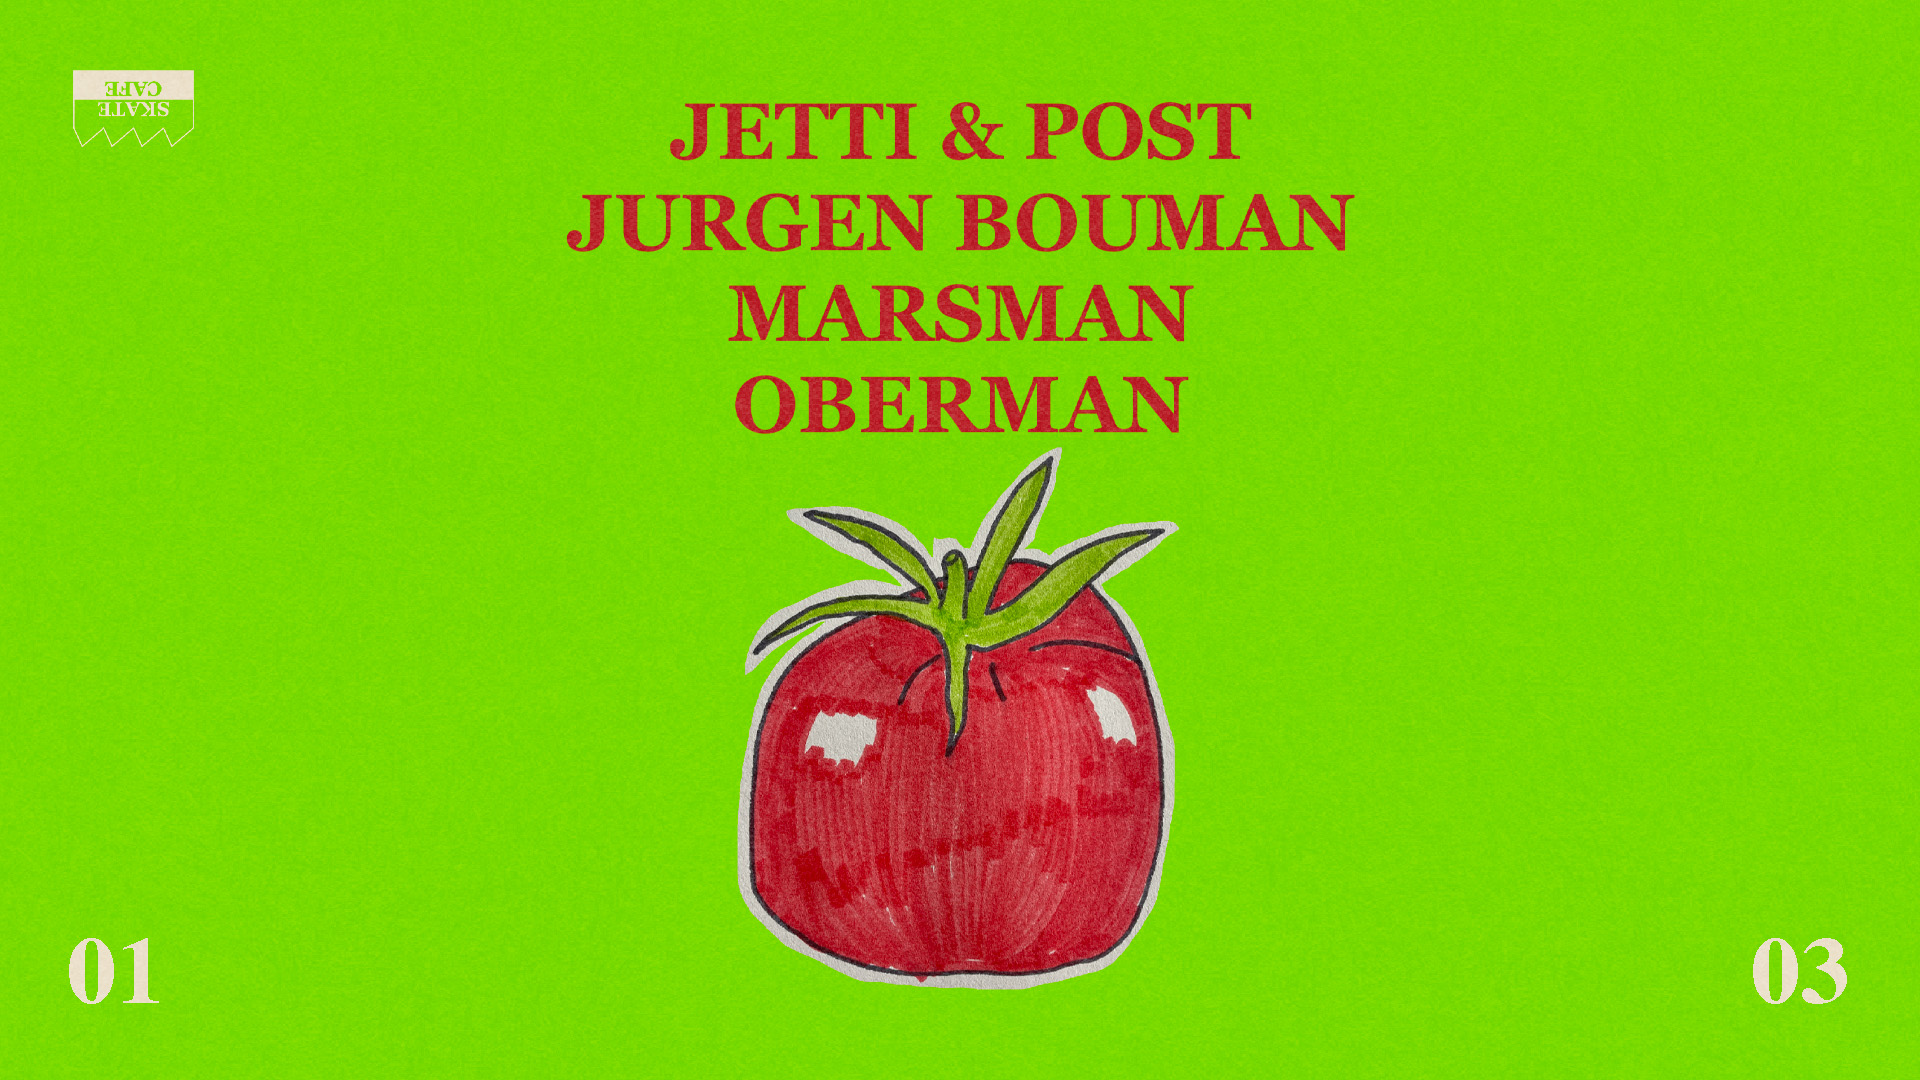 JETTI & POST, MARSMAN, OBERMAN, JURGEN BOUMAN header